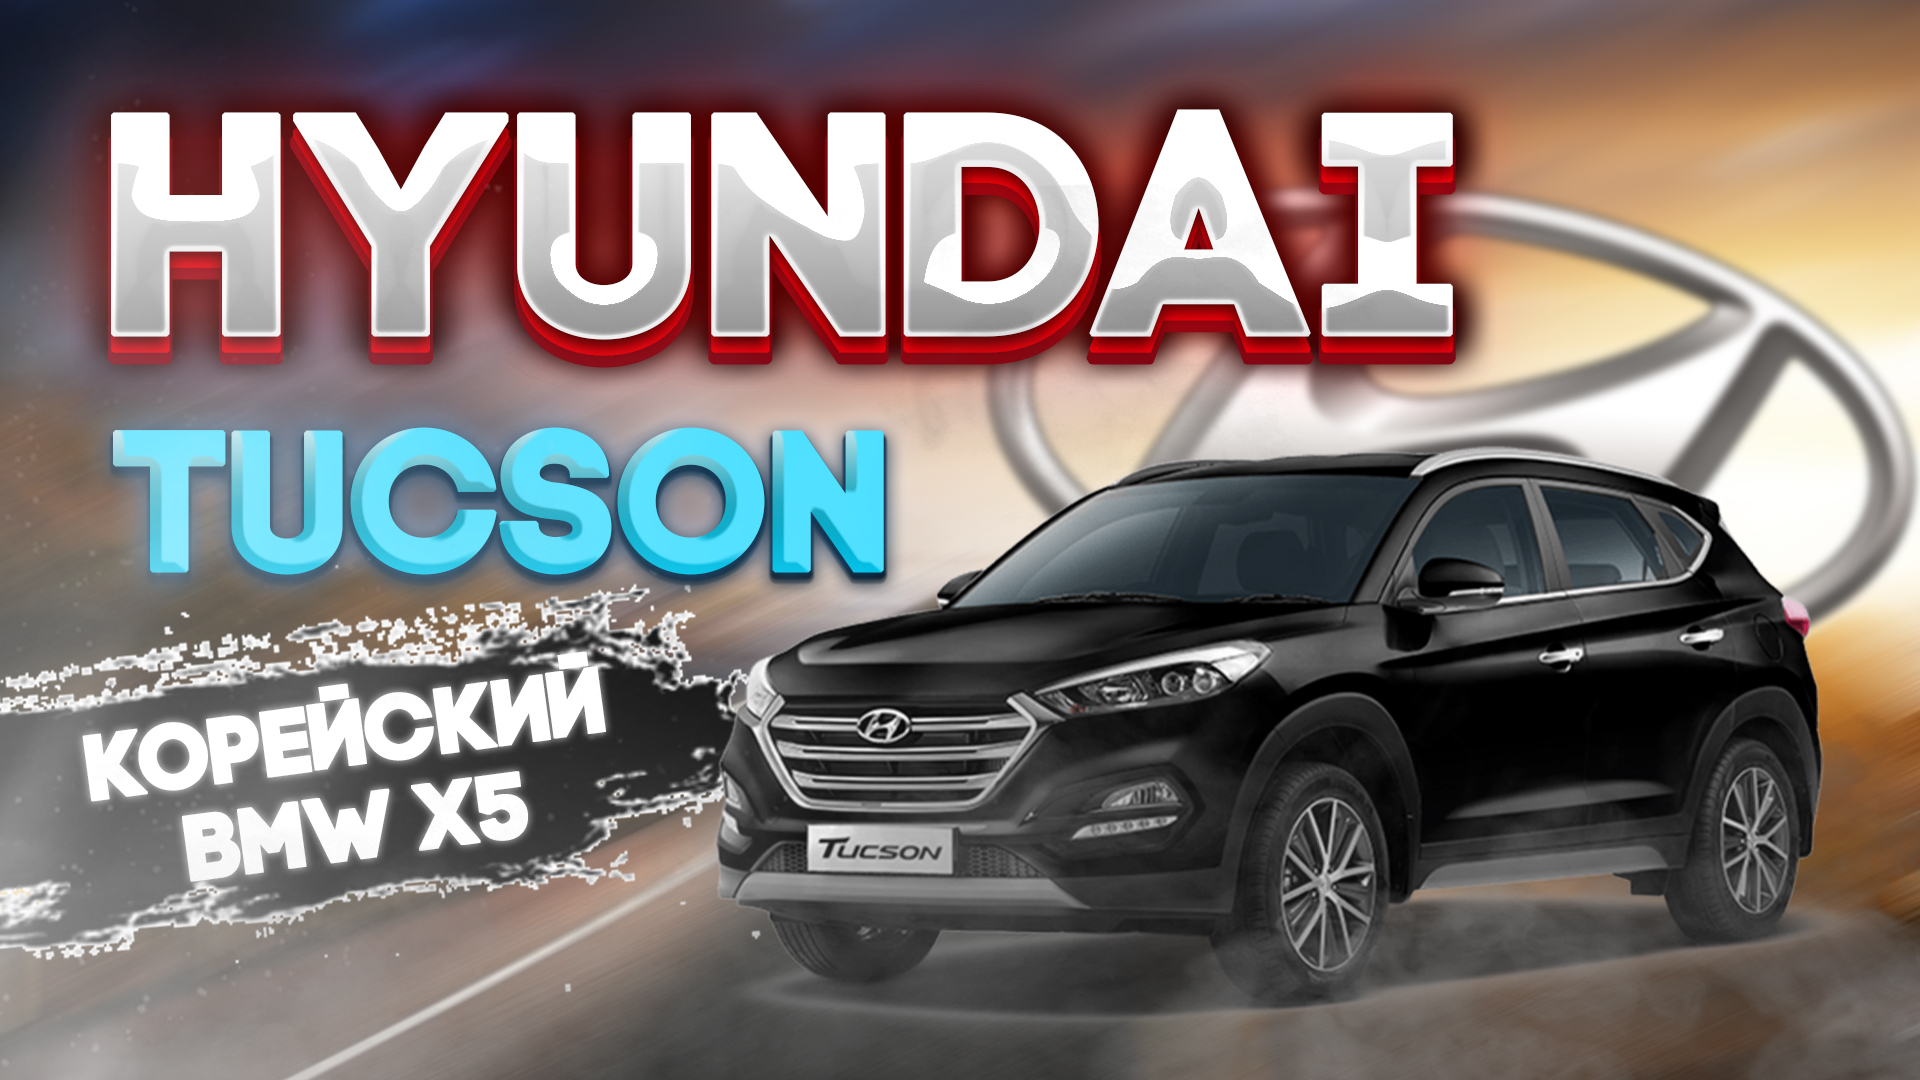 Новый Hyundai Tucson N line за
4.200.000 рублей.5сек до 100км/ч.